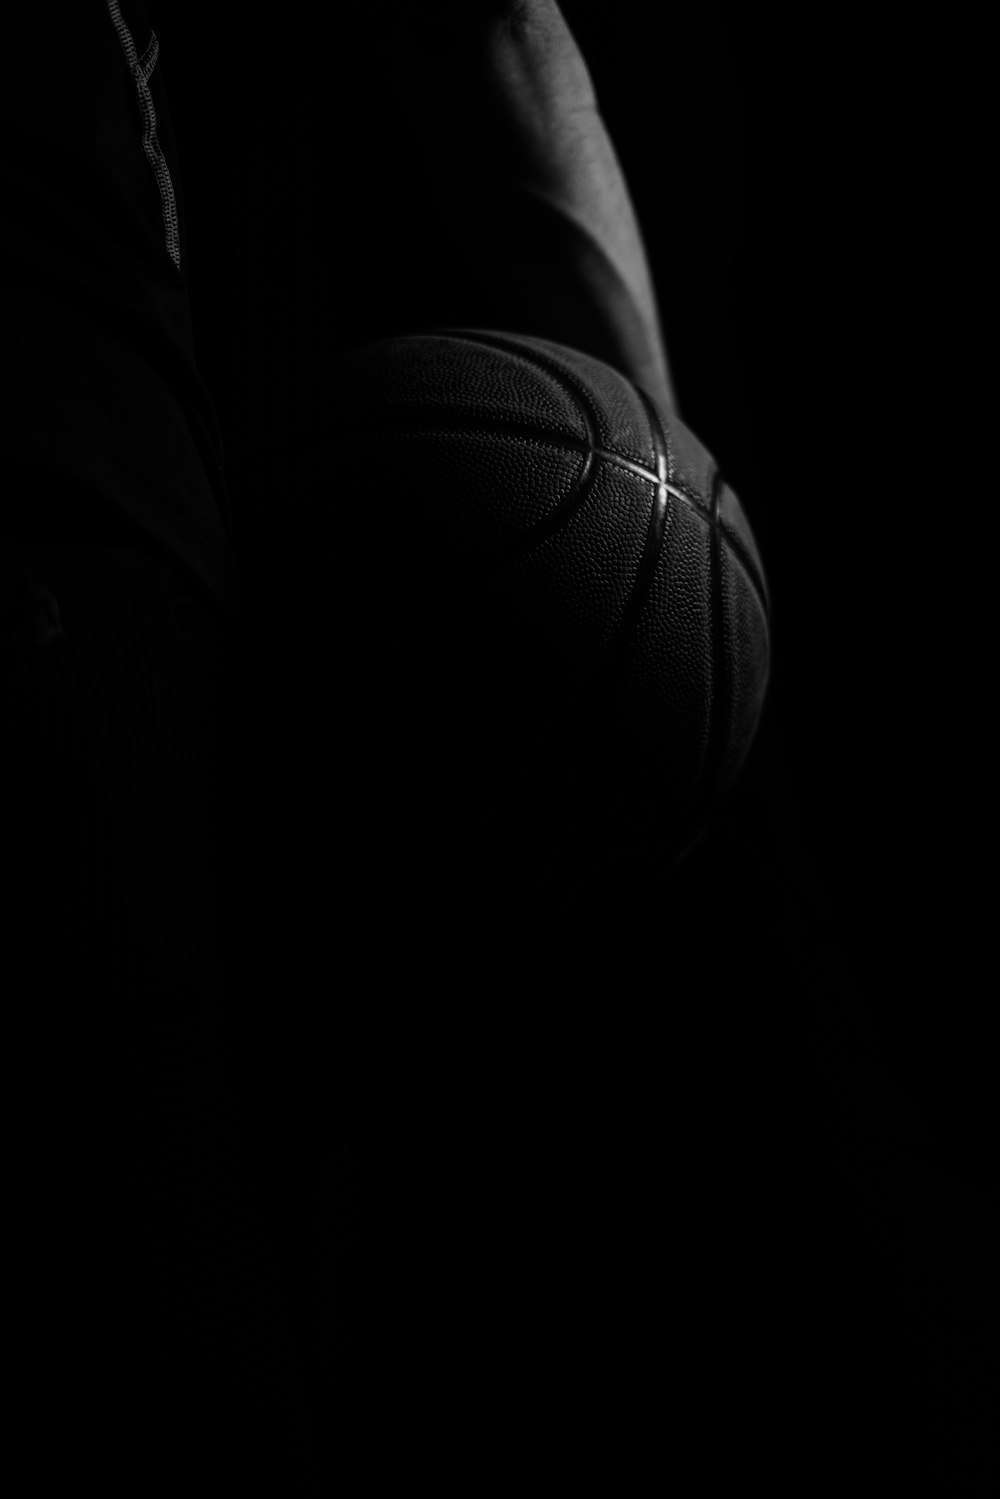 pallacanestro in bianco e nero fotografia